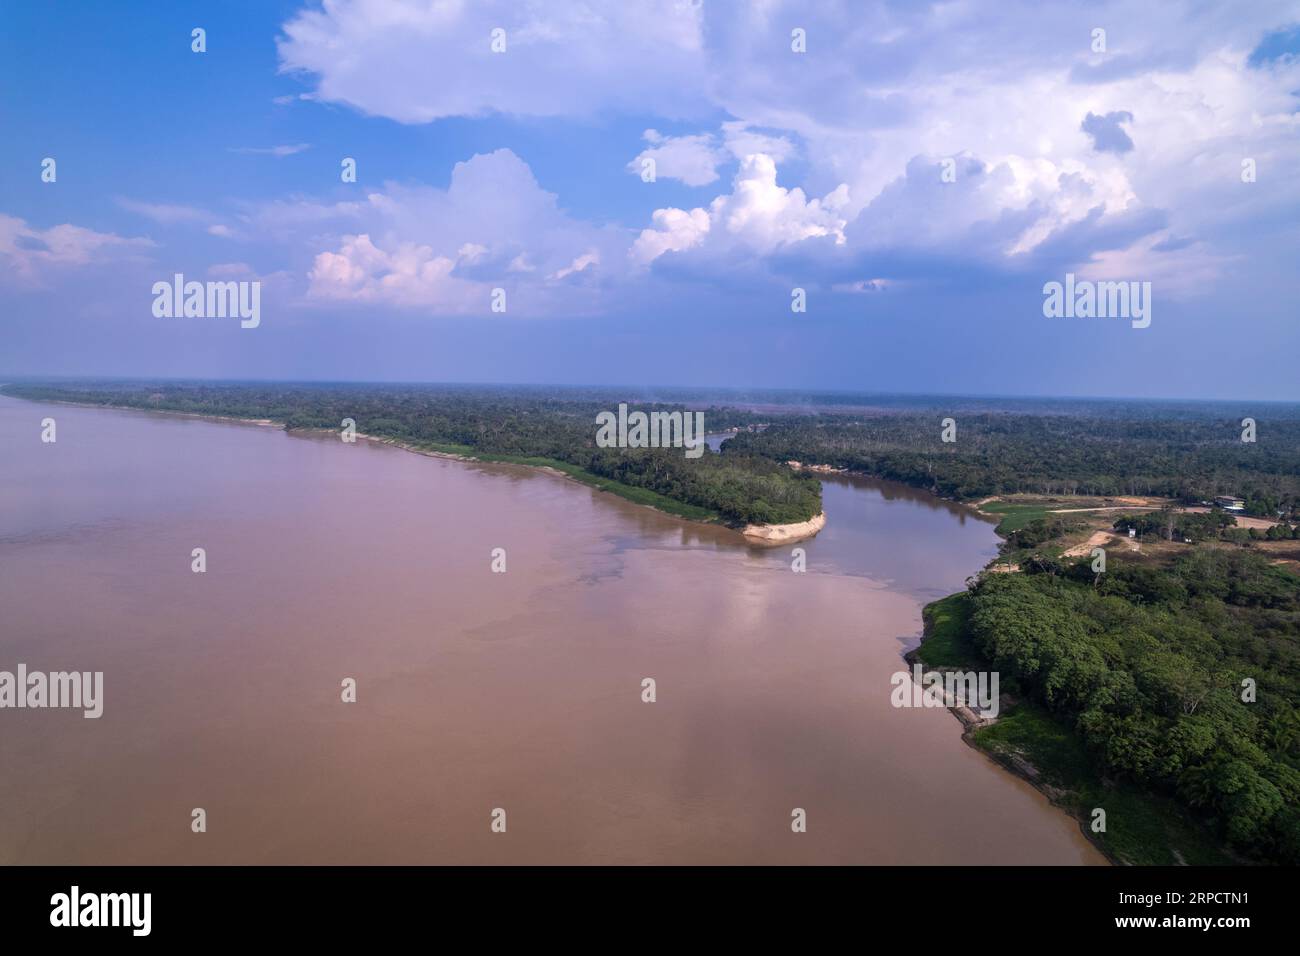 Magnifique paysage de forêt amazonienne vue aérienne de Madère et Abuna à la frontière du Brésil et de la Bolivie par une journée d'été ensoleillée. Écologie Banque D'Images